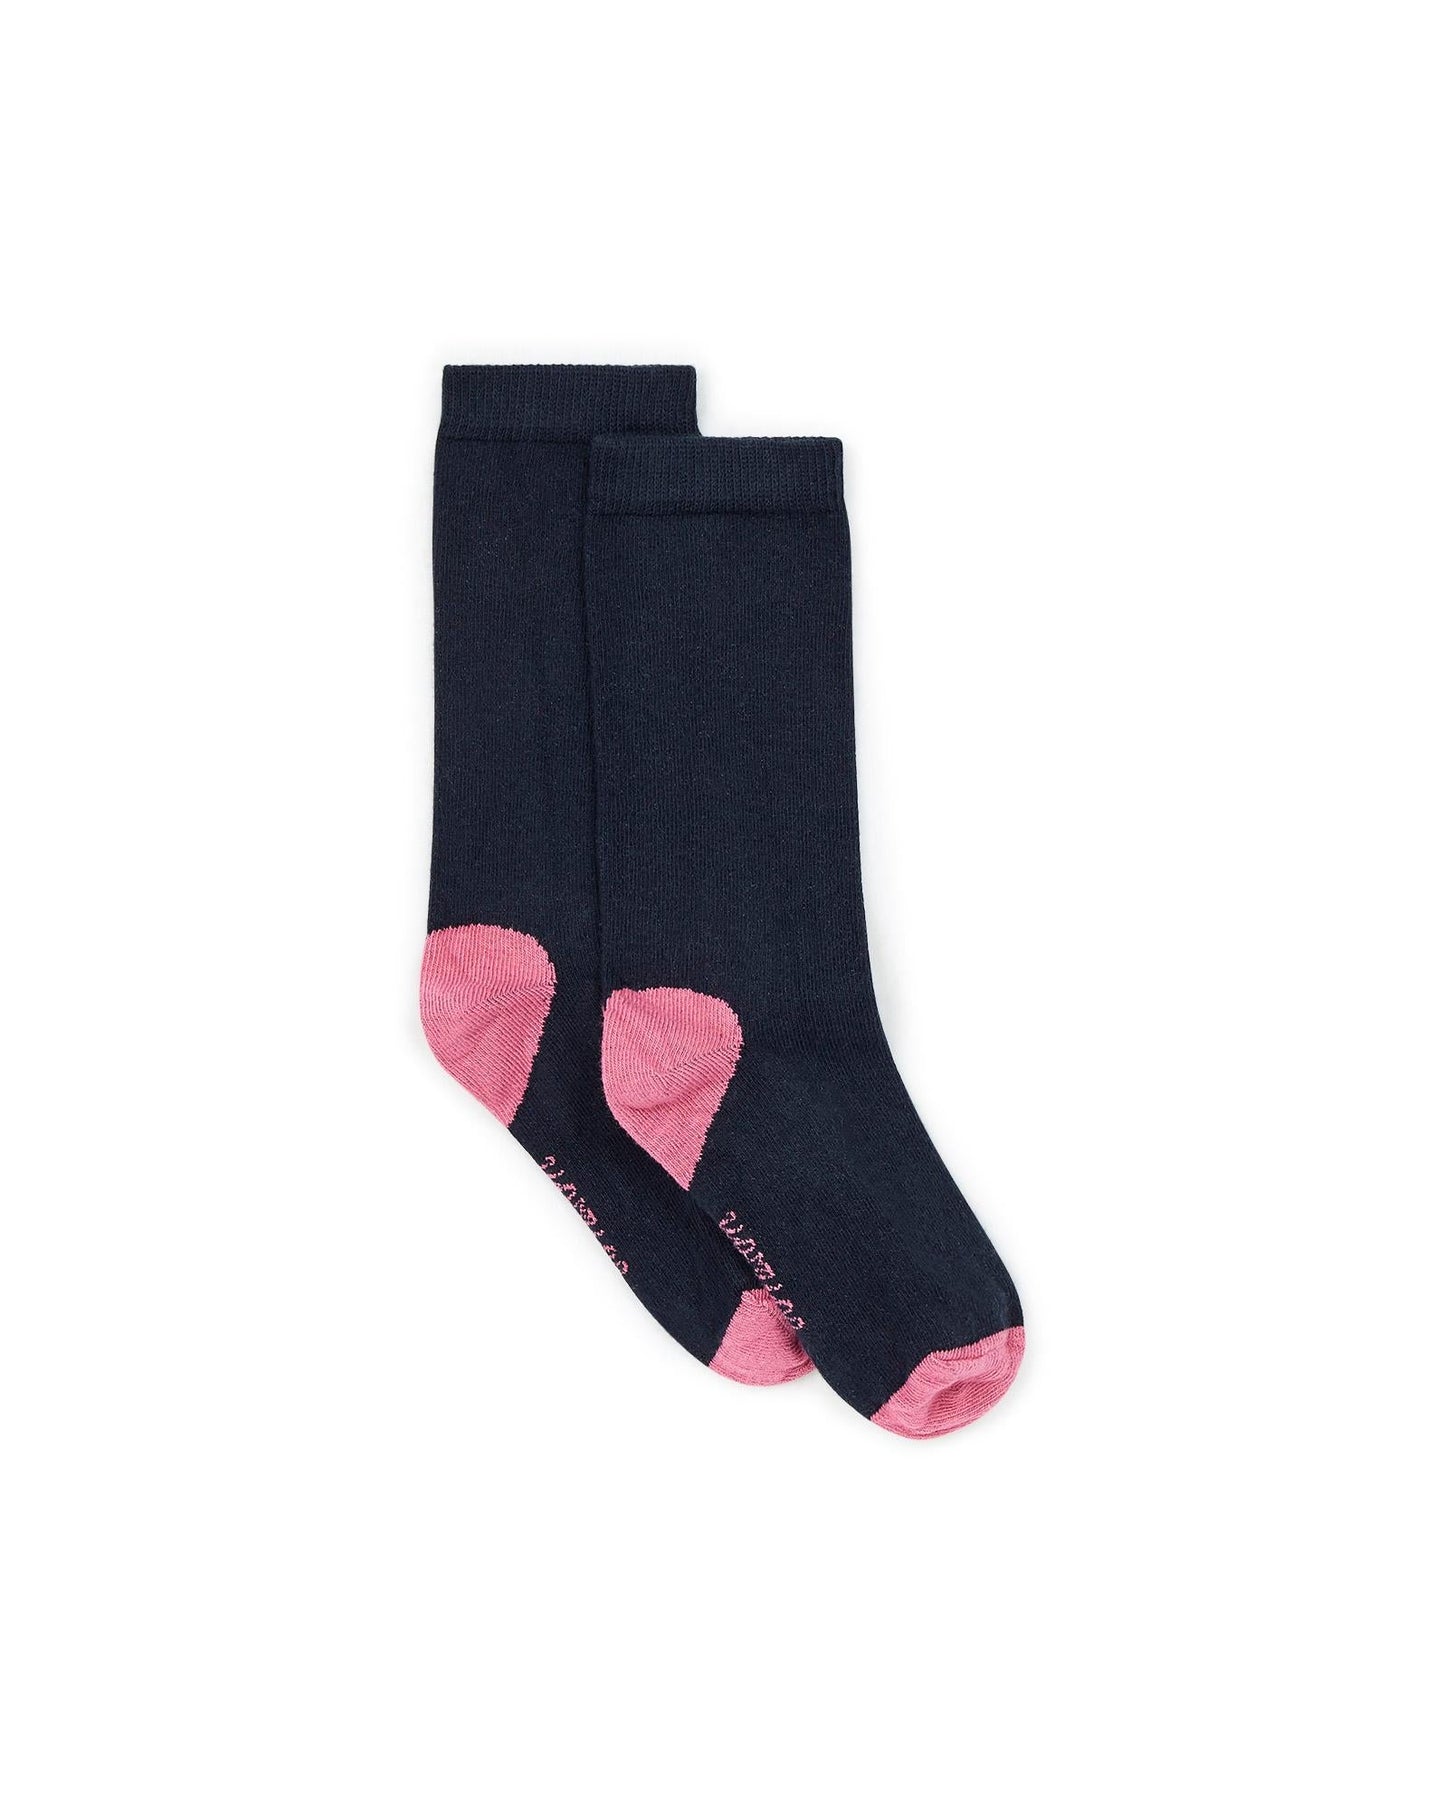 Socks - Girl Head heel